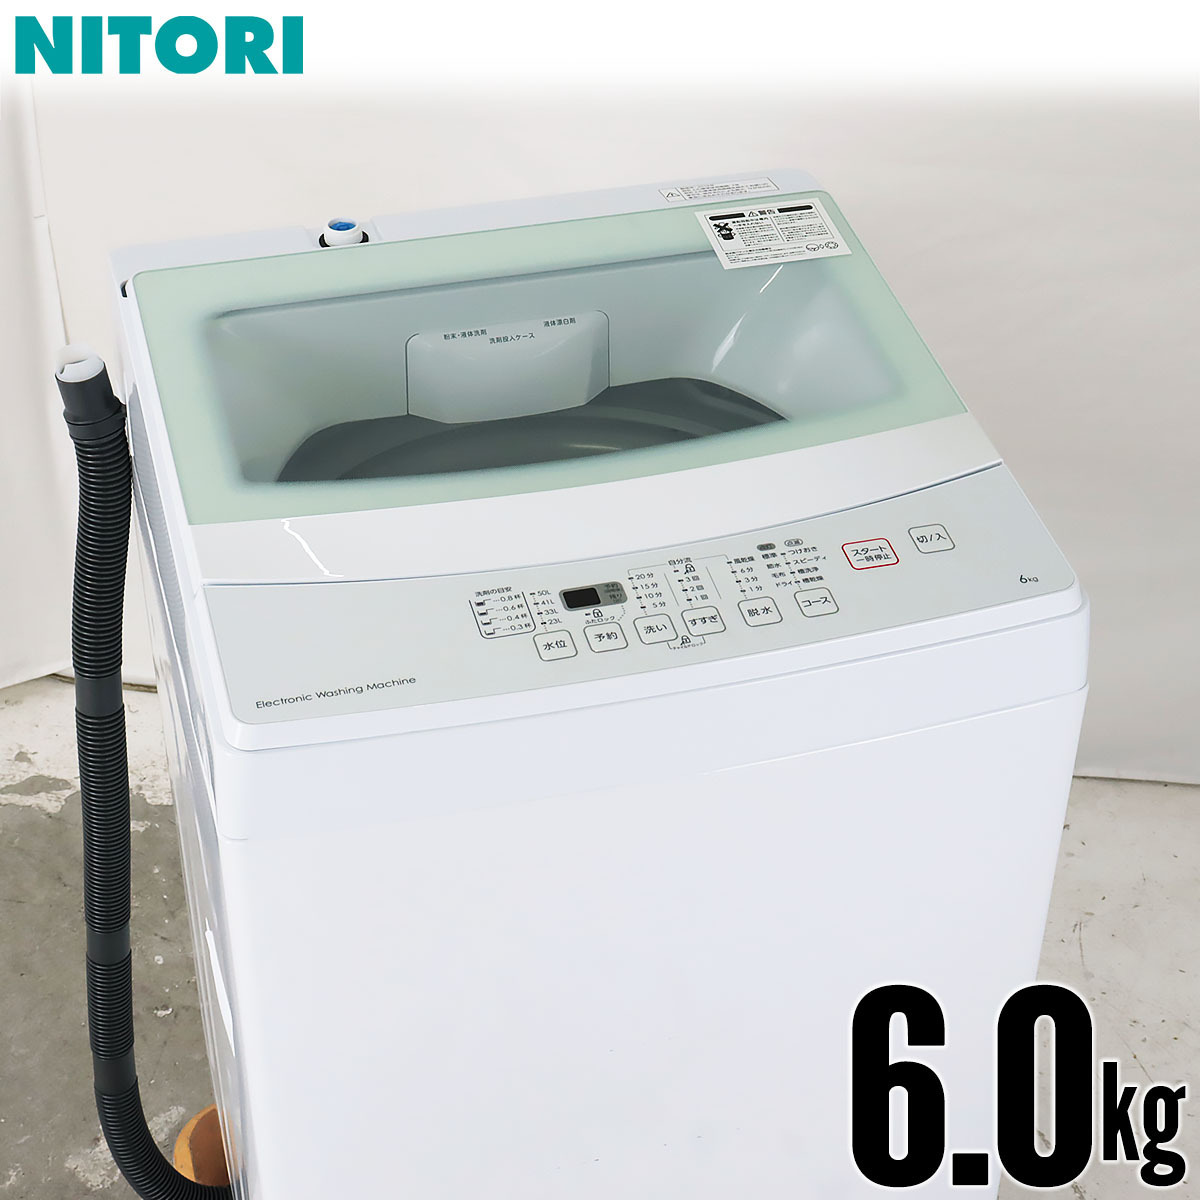 44％割引激安な 中古 全自動洗濯機 縦型 6kg トルネ 美品 2019年製 NITORI NTR60 ガラストップ 京都在庫 Di5583 洗濯機一般  洗濯、アイロン 家電、AV、カメラ-AATHAAR.NET